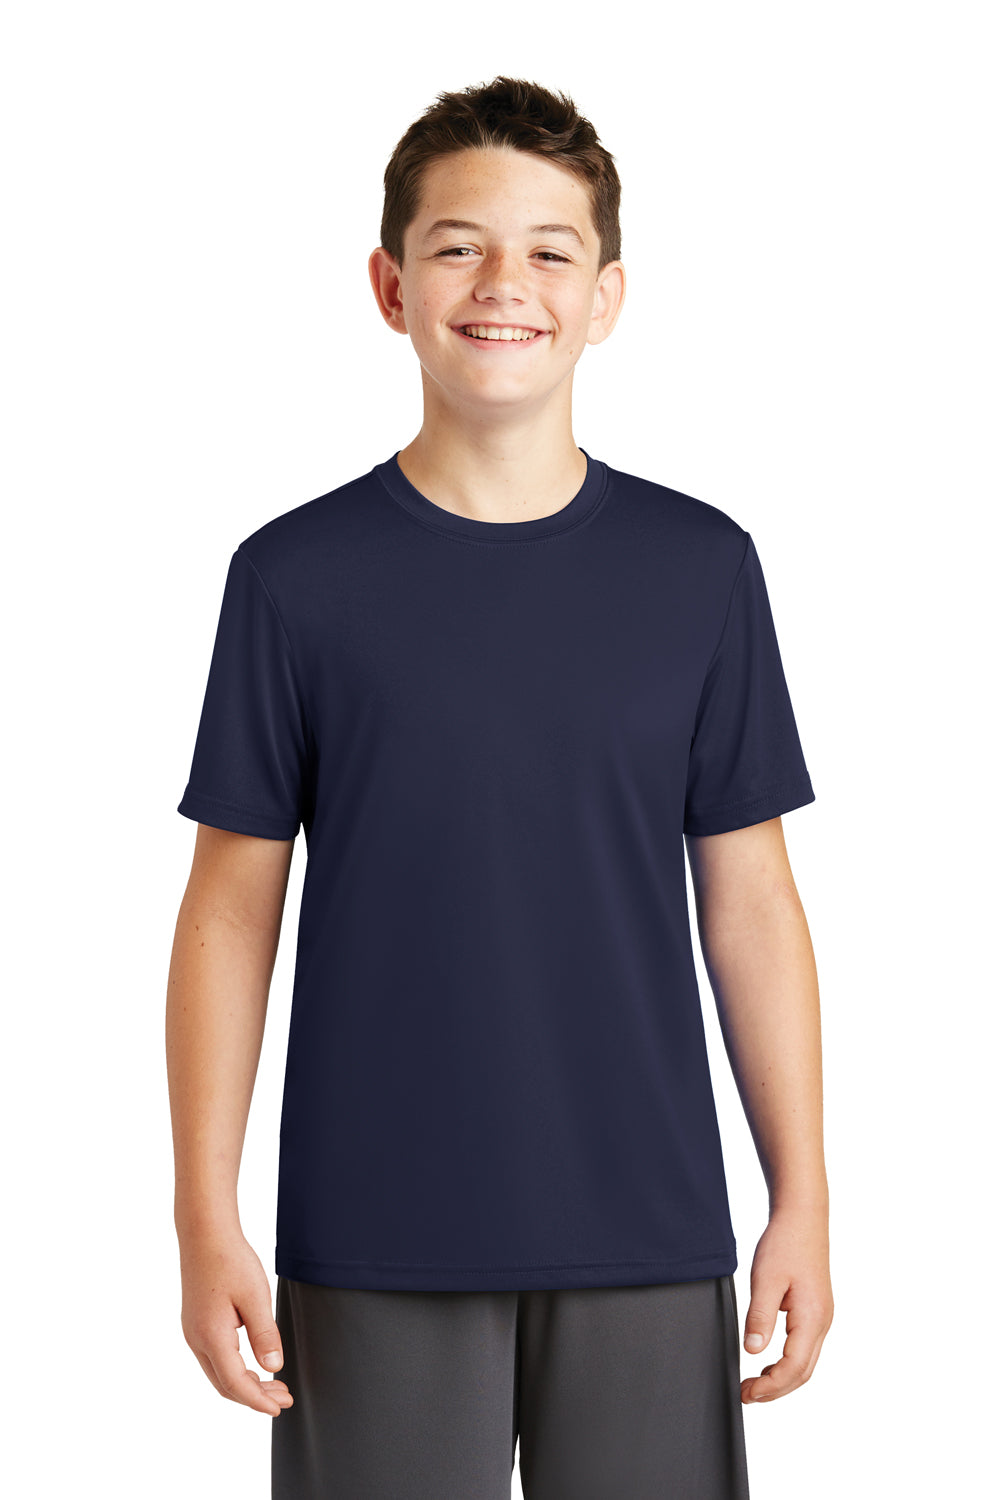 Sport-Tek YST320 Youth Tough Moisture Wicking Short Sleeve Crewneck T-Shirt Navy Blue Front